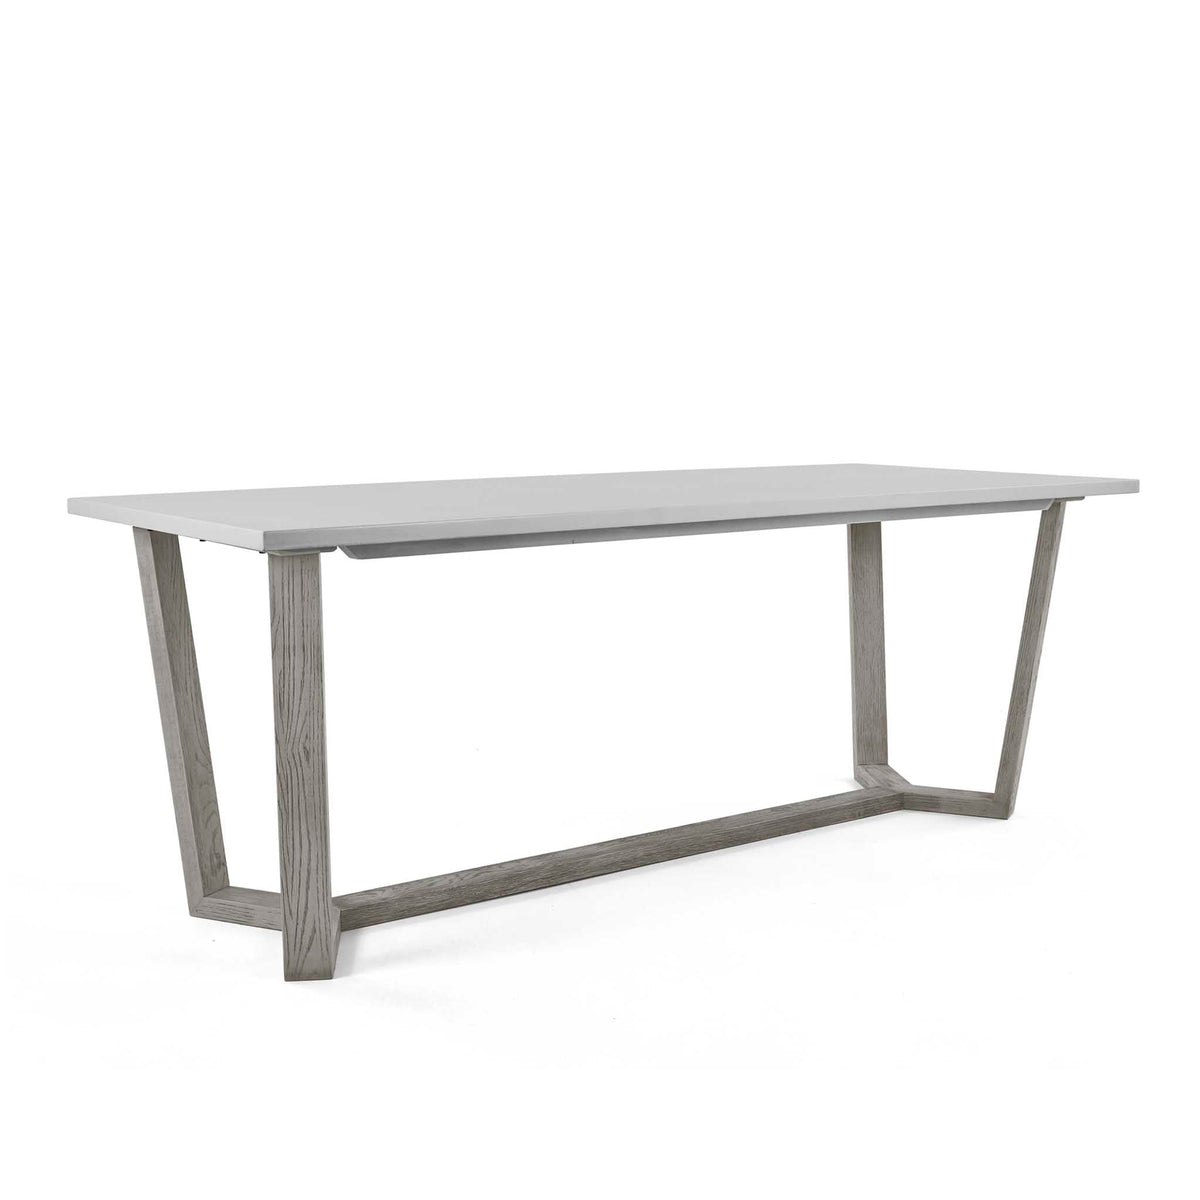 Epsom 210cm Rectangular Dining Table from Roseland Furniture